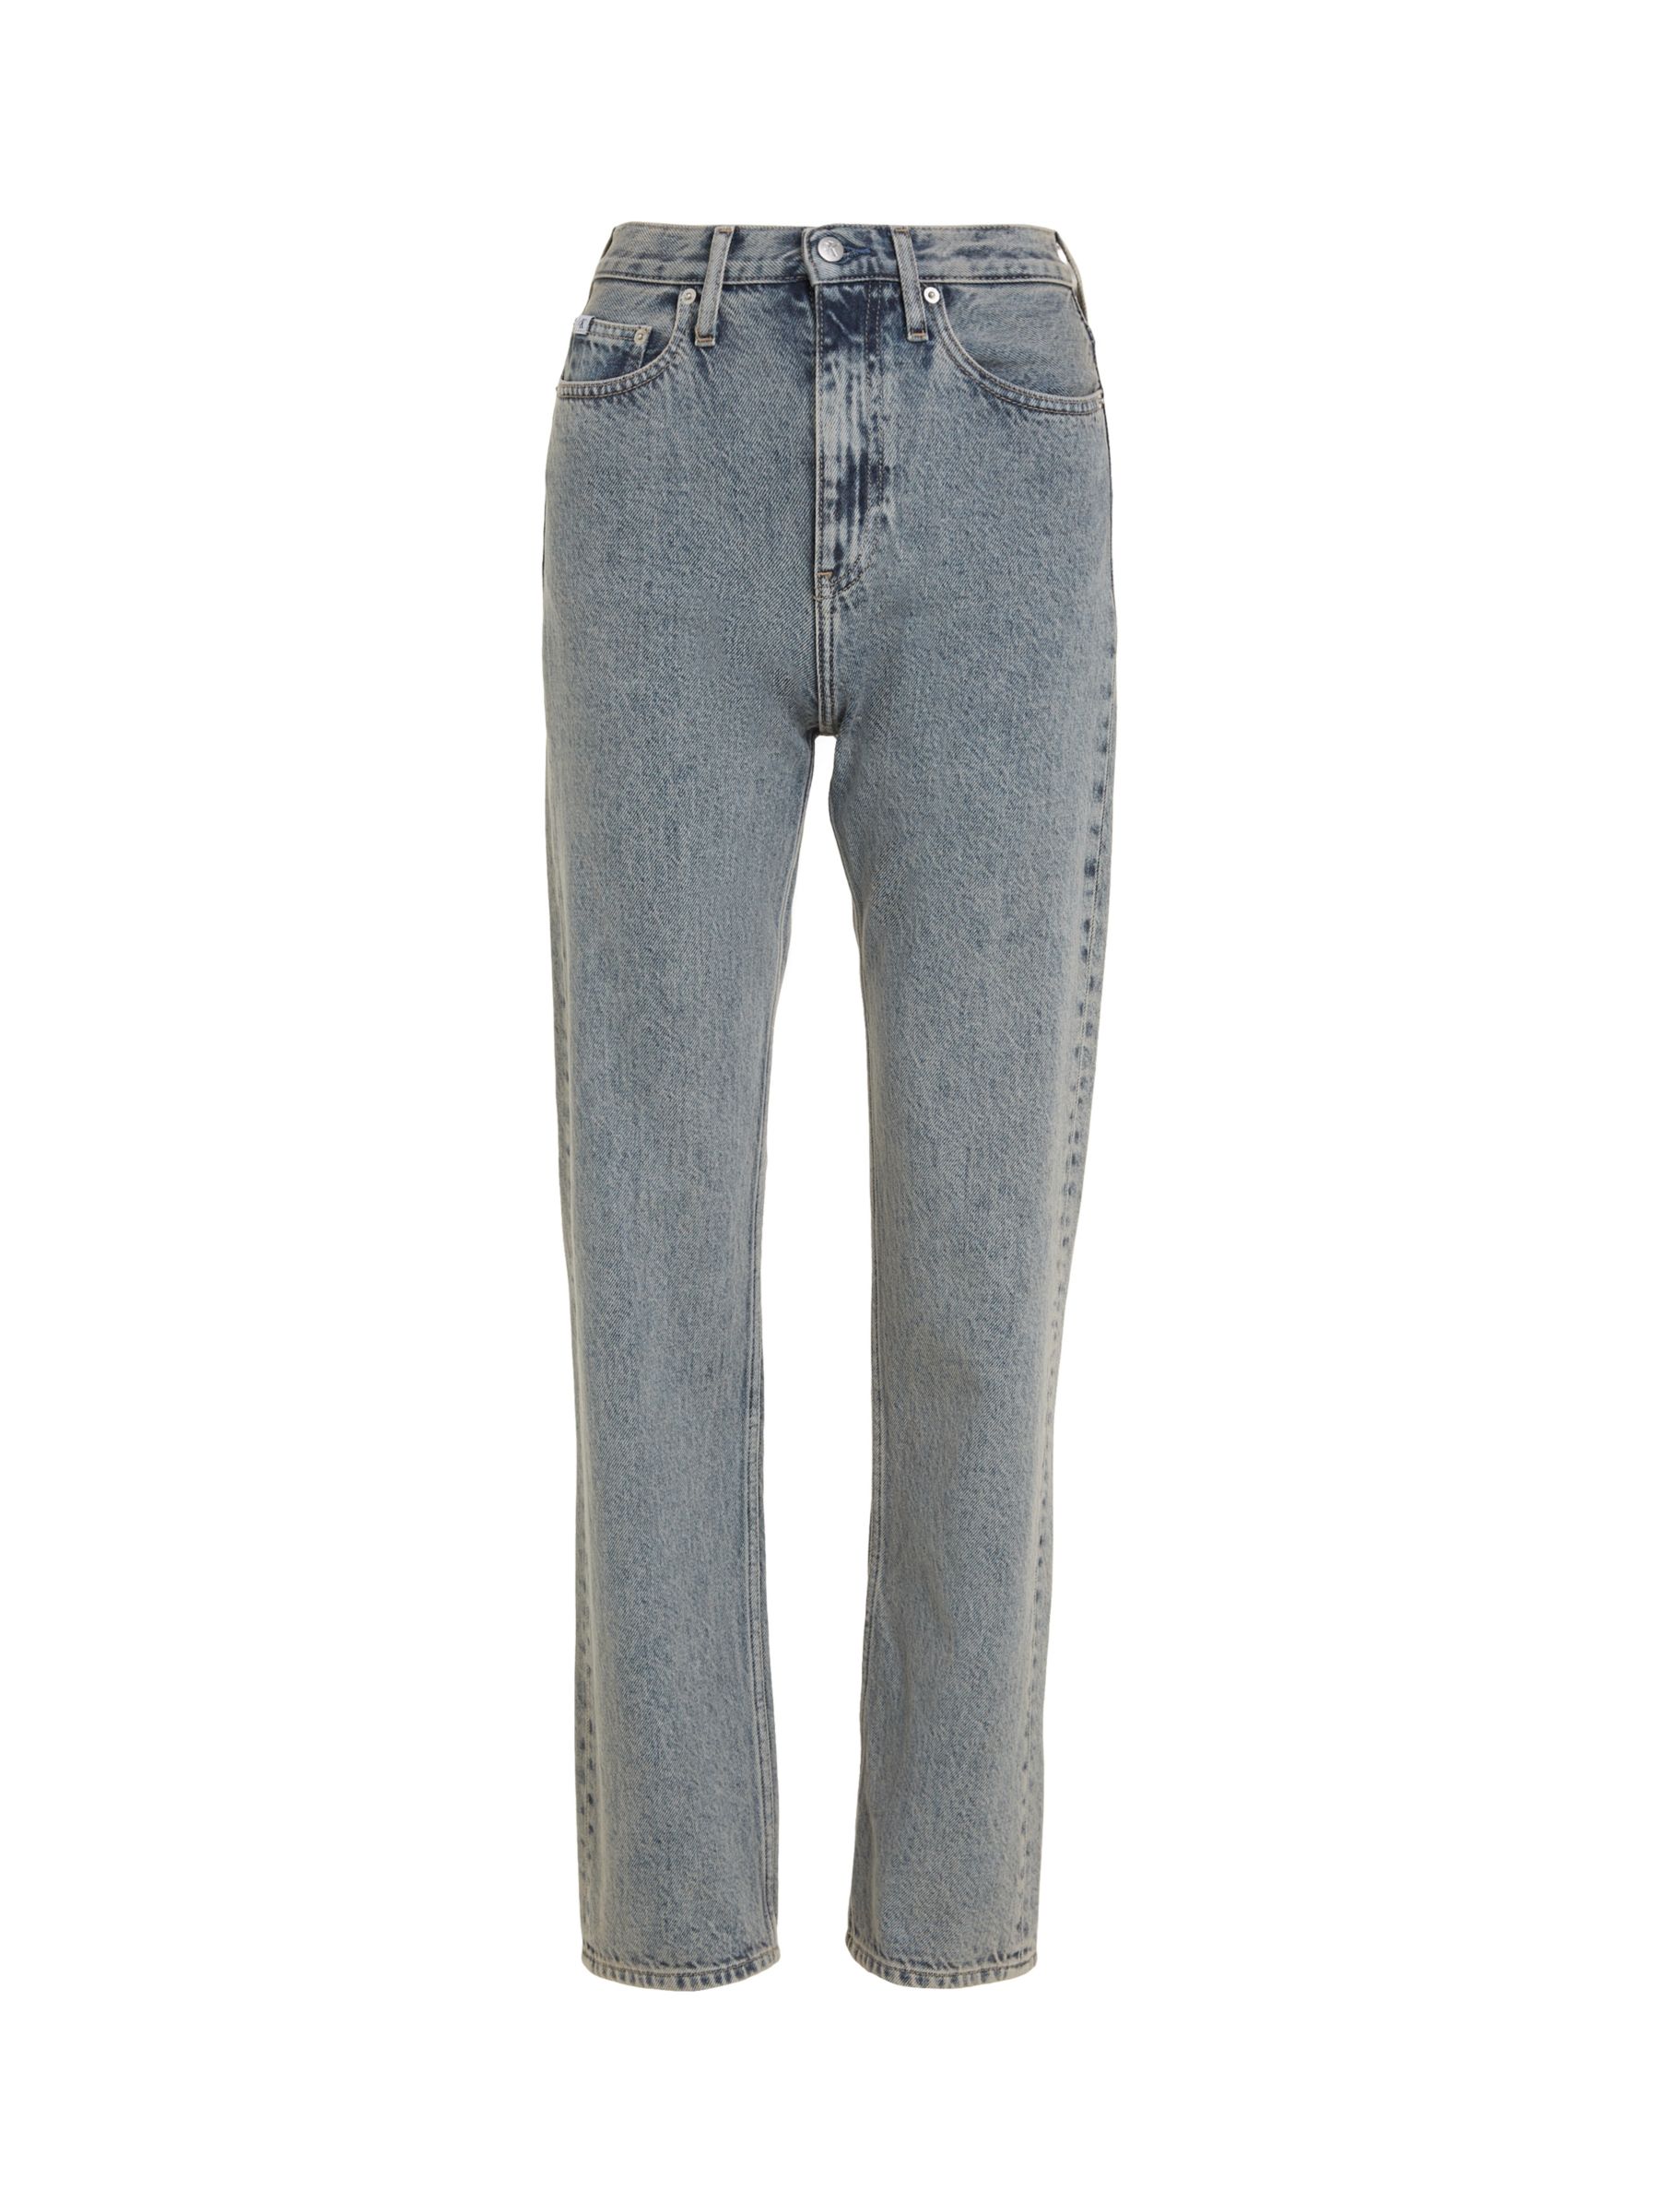 Calvin Klein High Rise Straight Cut Jeans, Grey, 27R